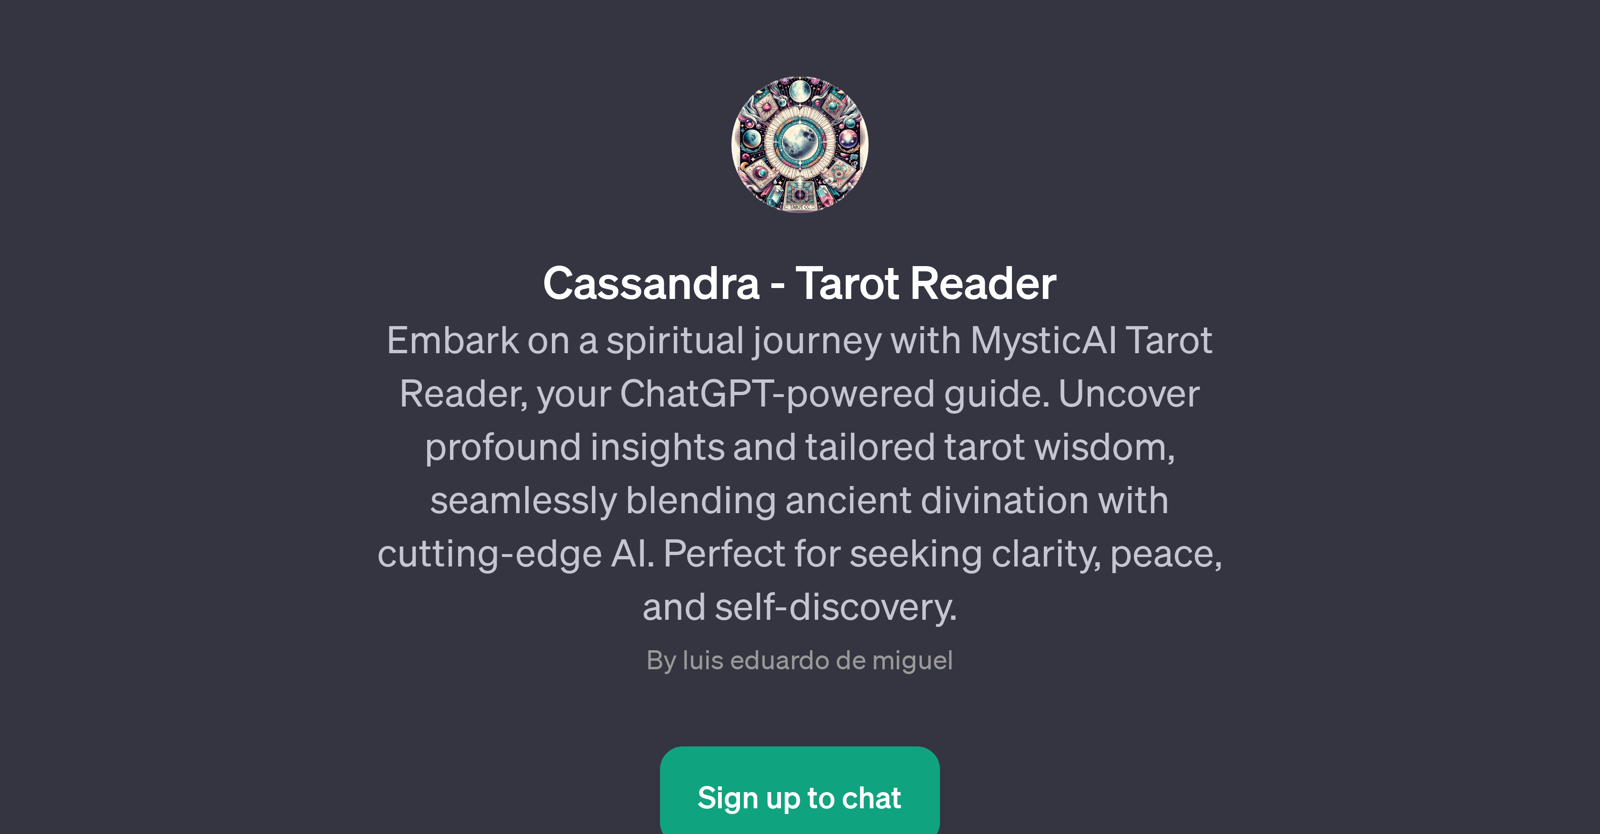 Cassandra - Tarot Reader website